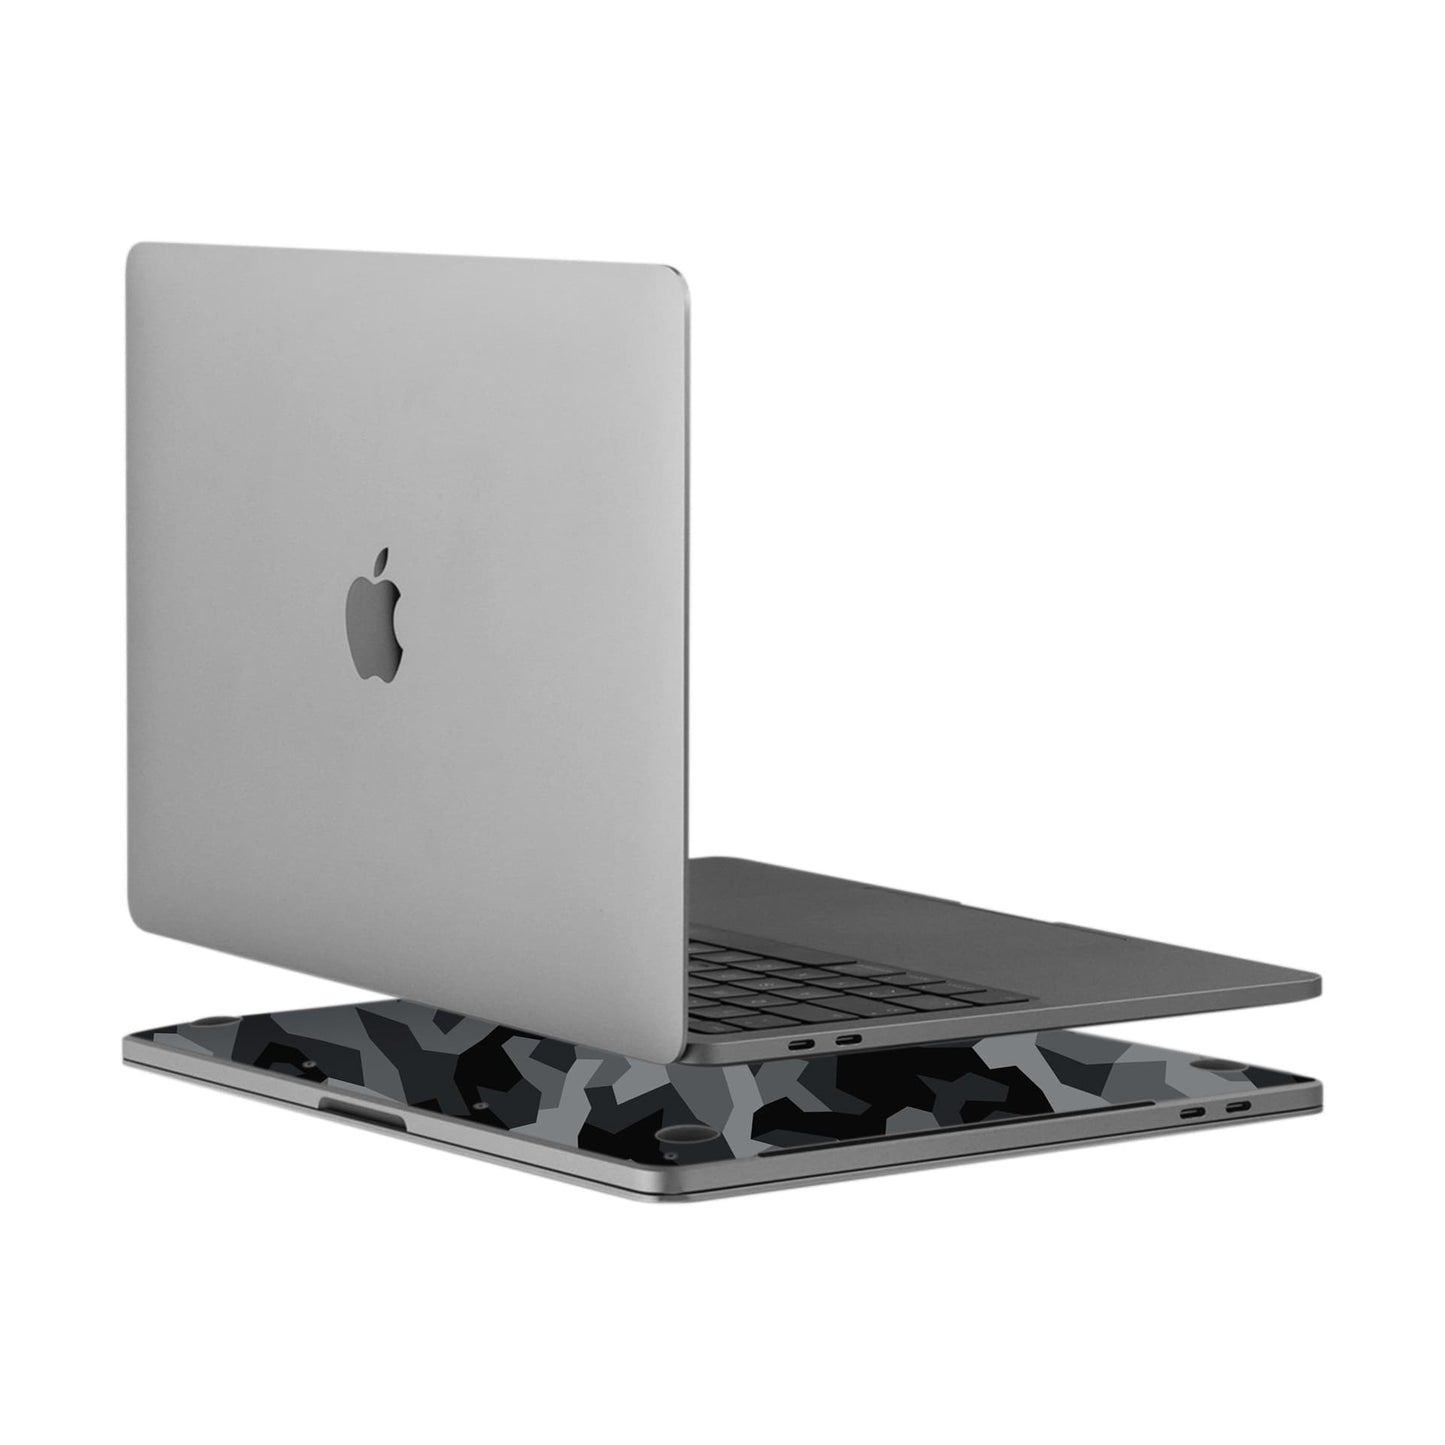 MacBook Pro 13", 2 Thunderbolt Ports (2020) - Camouflage